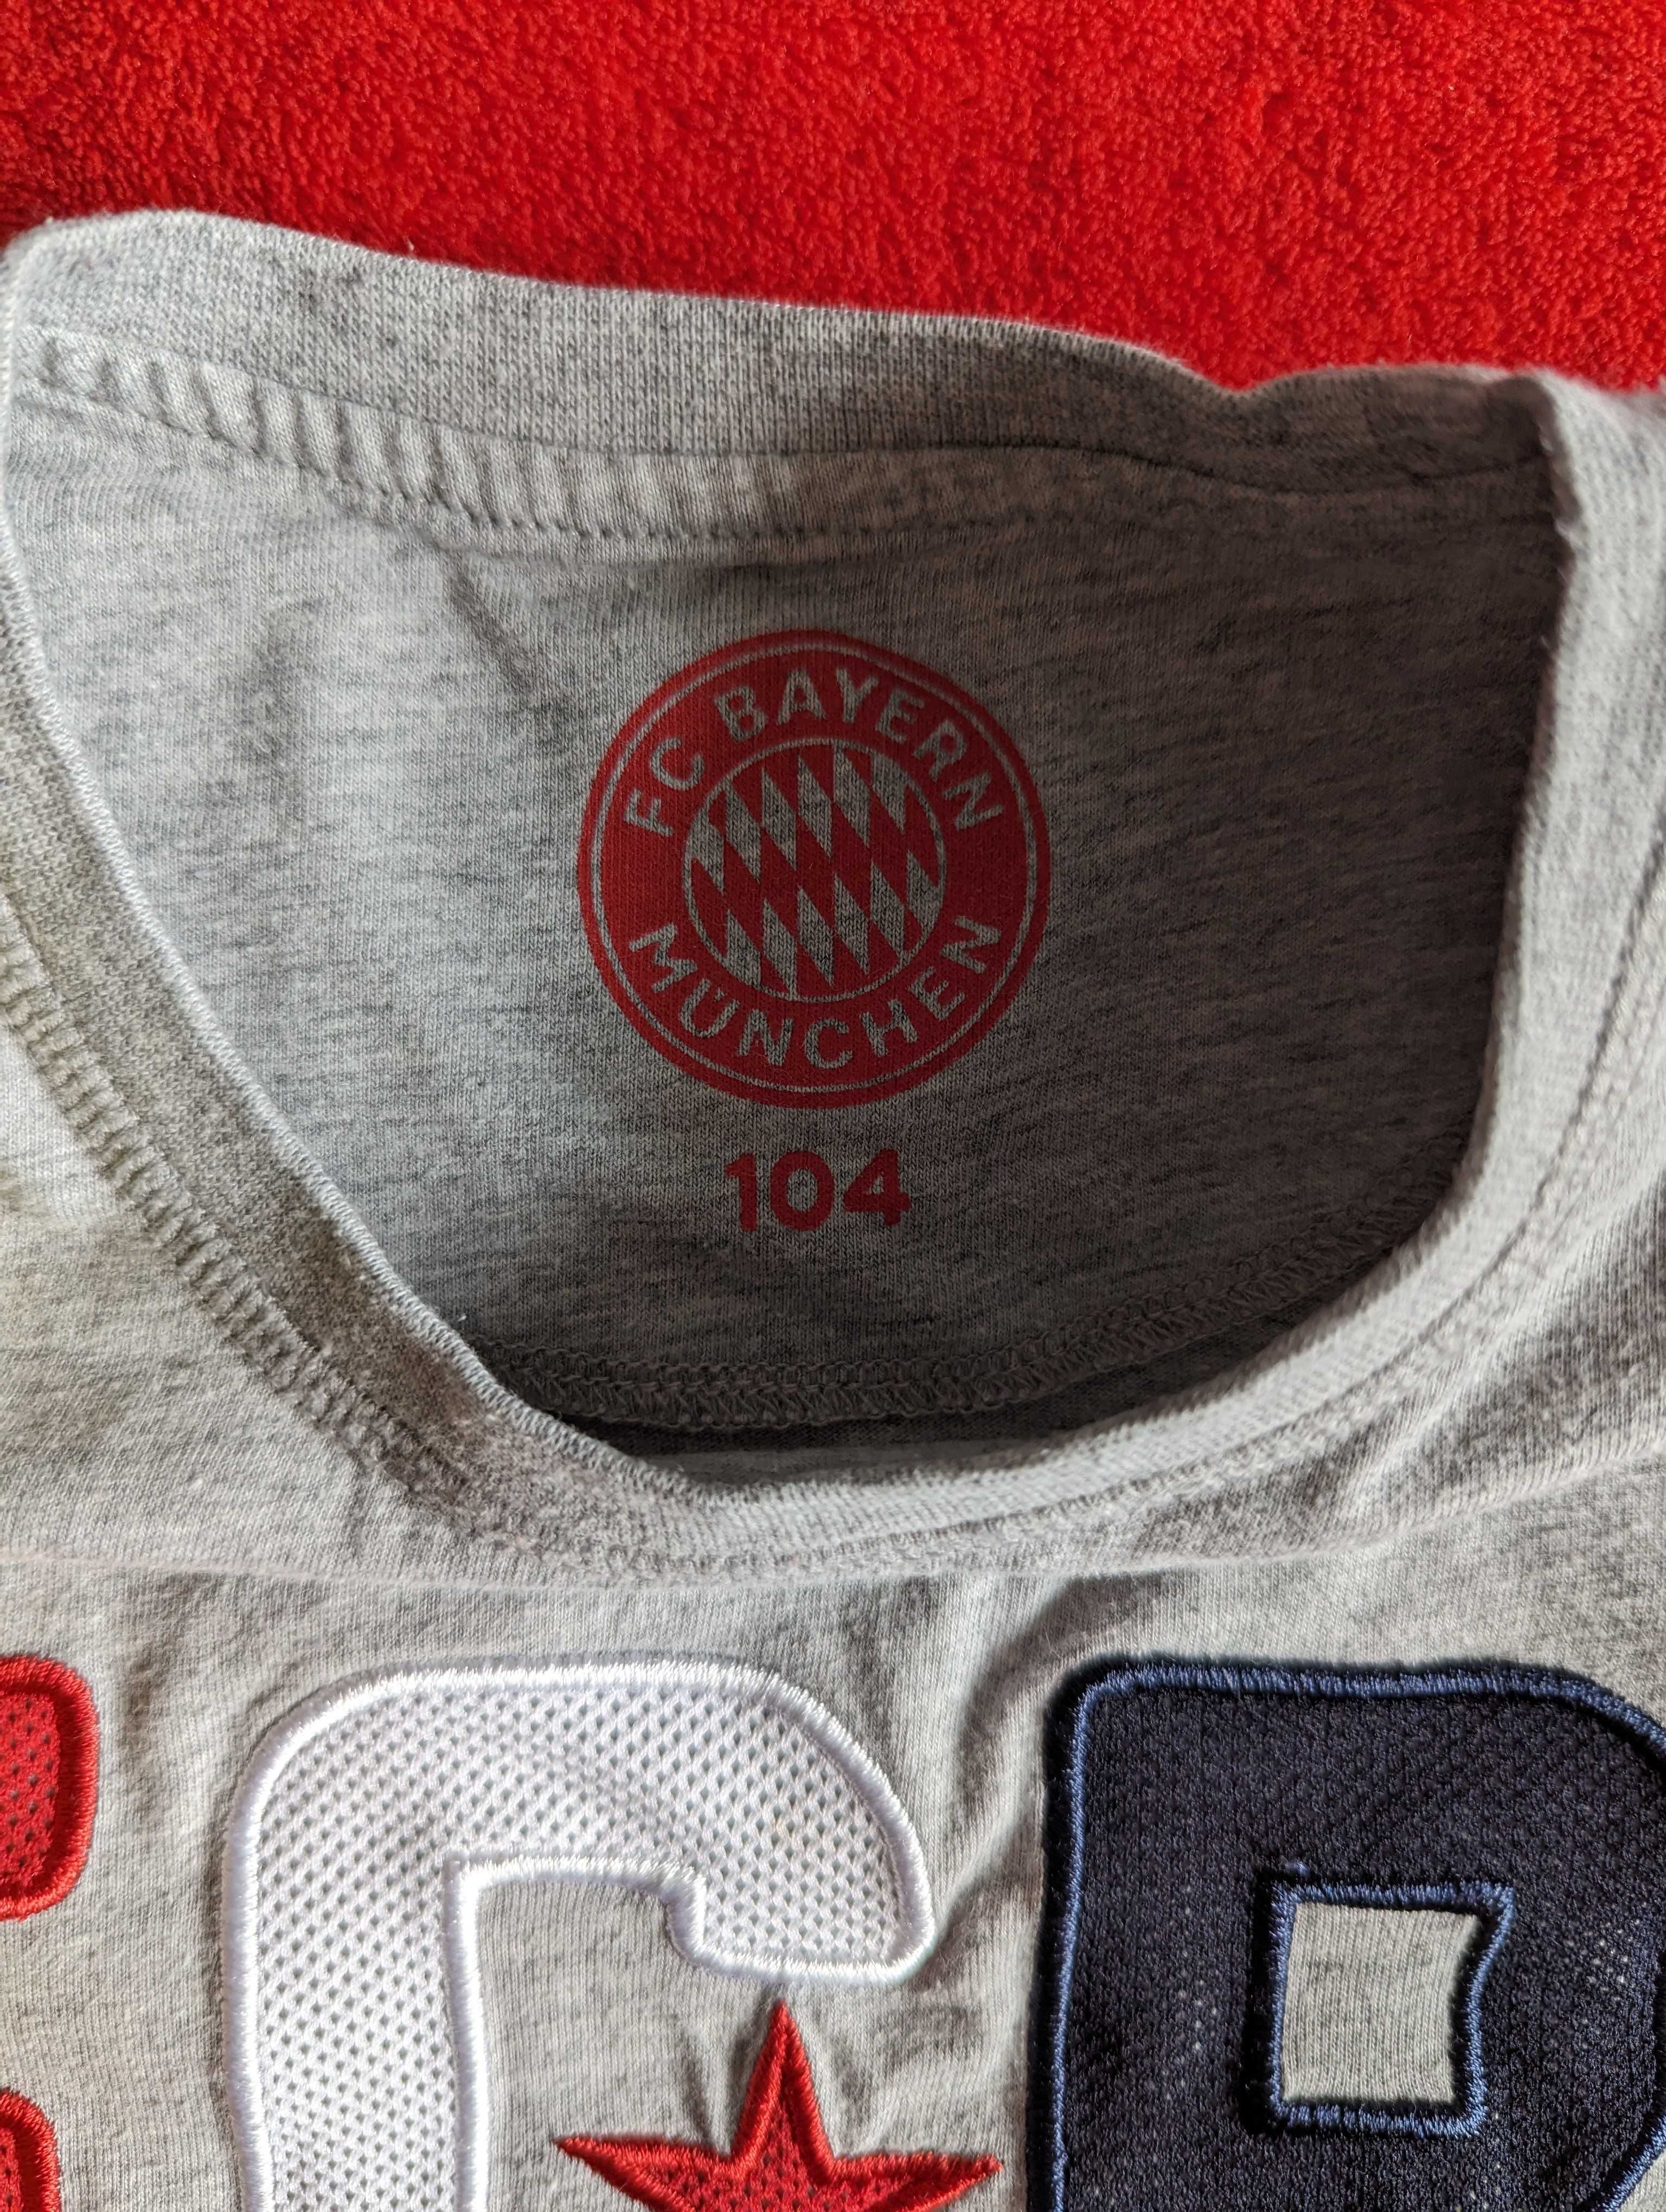 Podkoszulka t-shirt FC Bayern, rozmiar 104